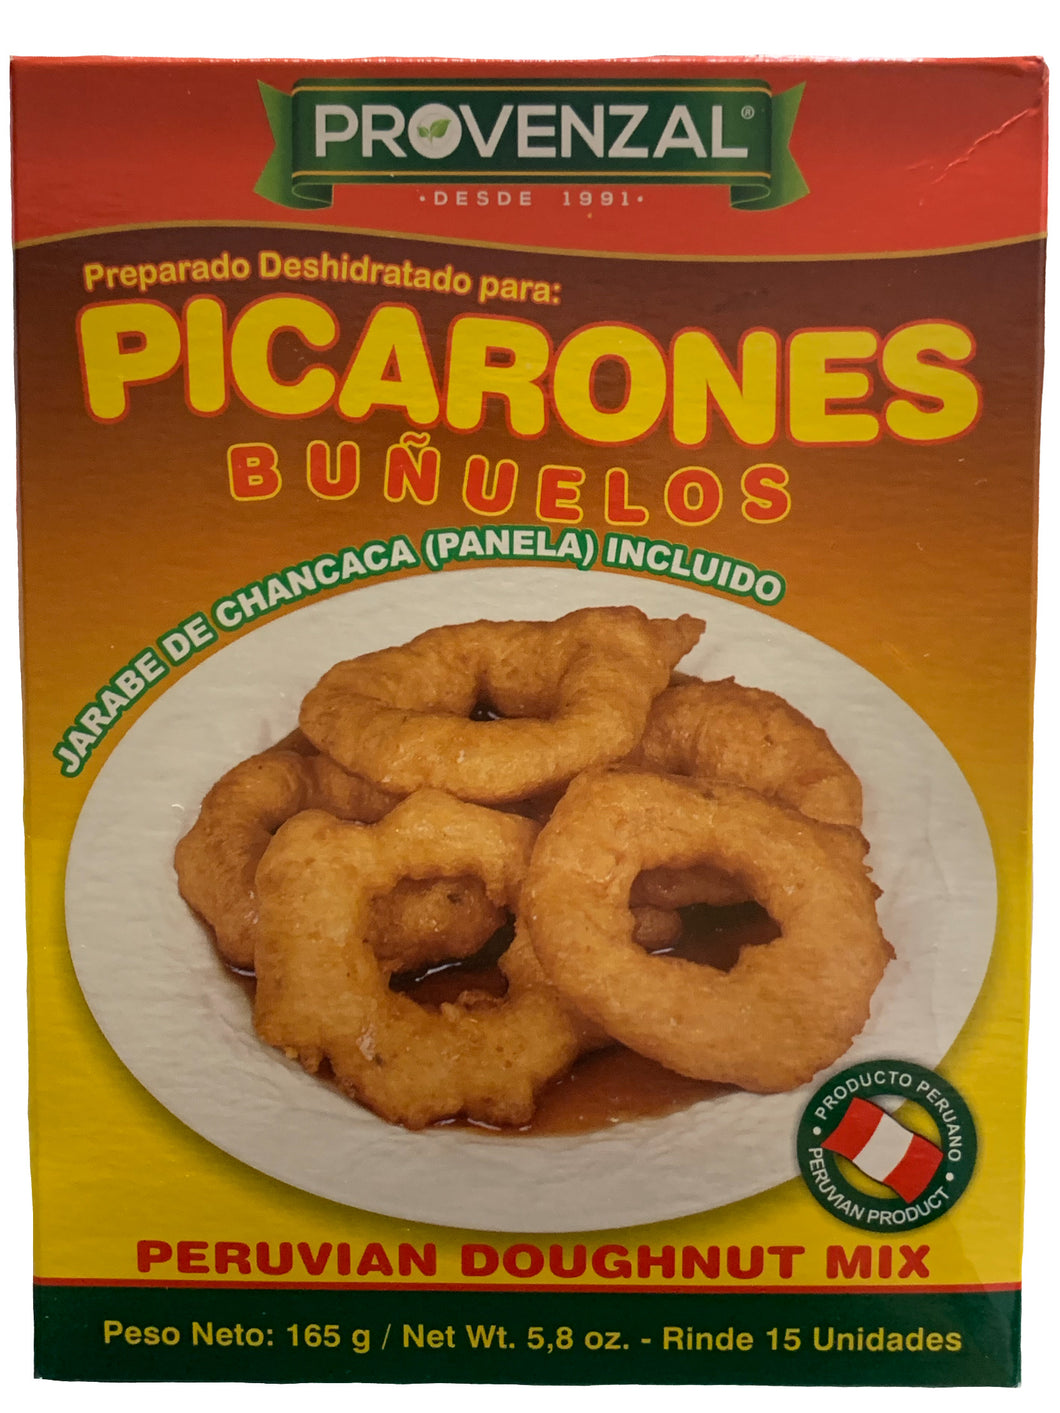 Provenzal Doughnuts - Picarones 165g